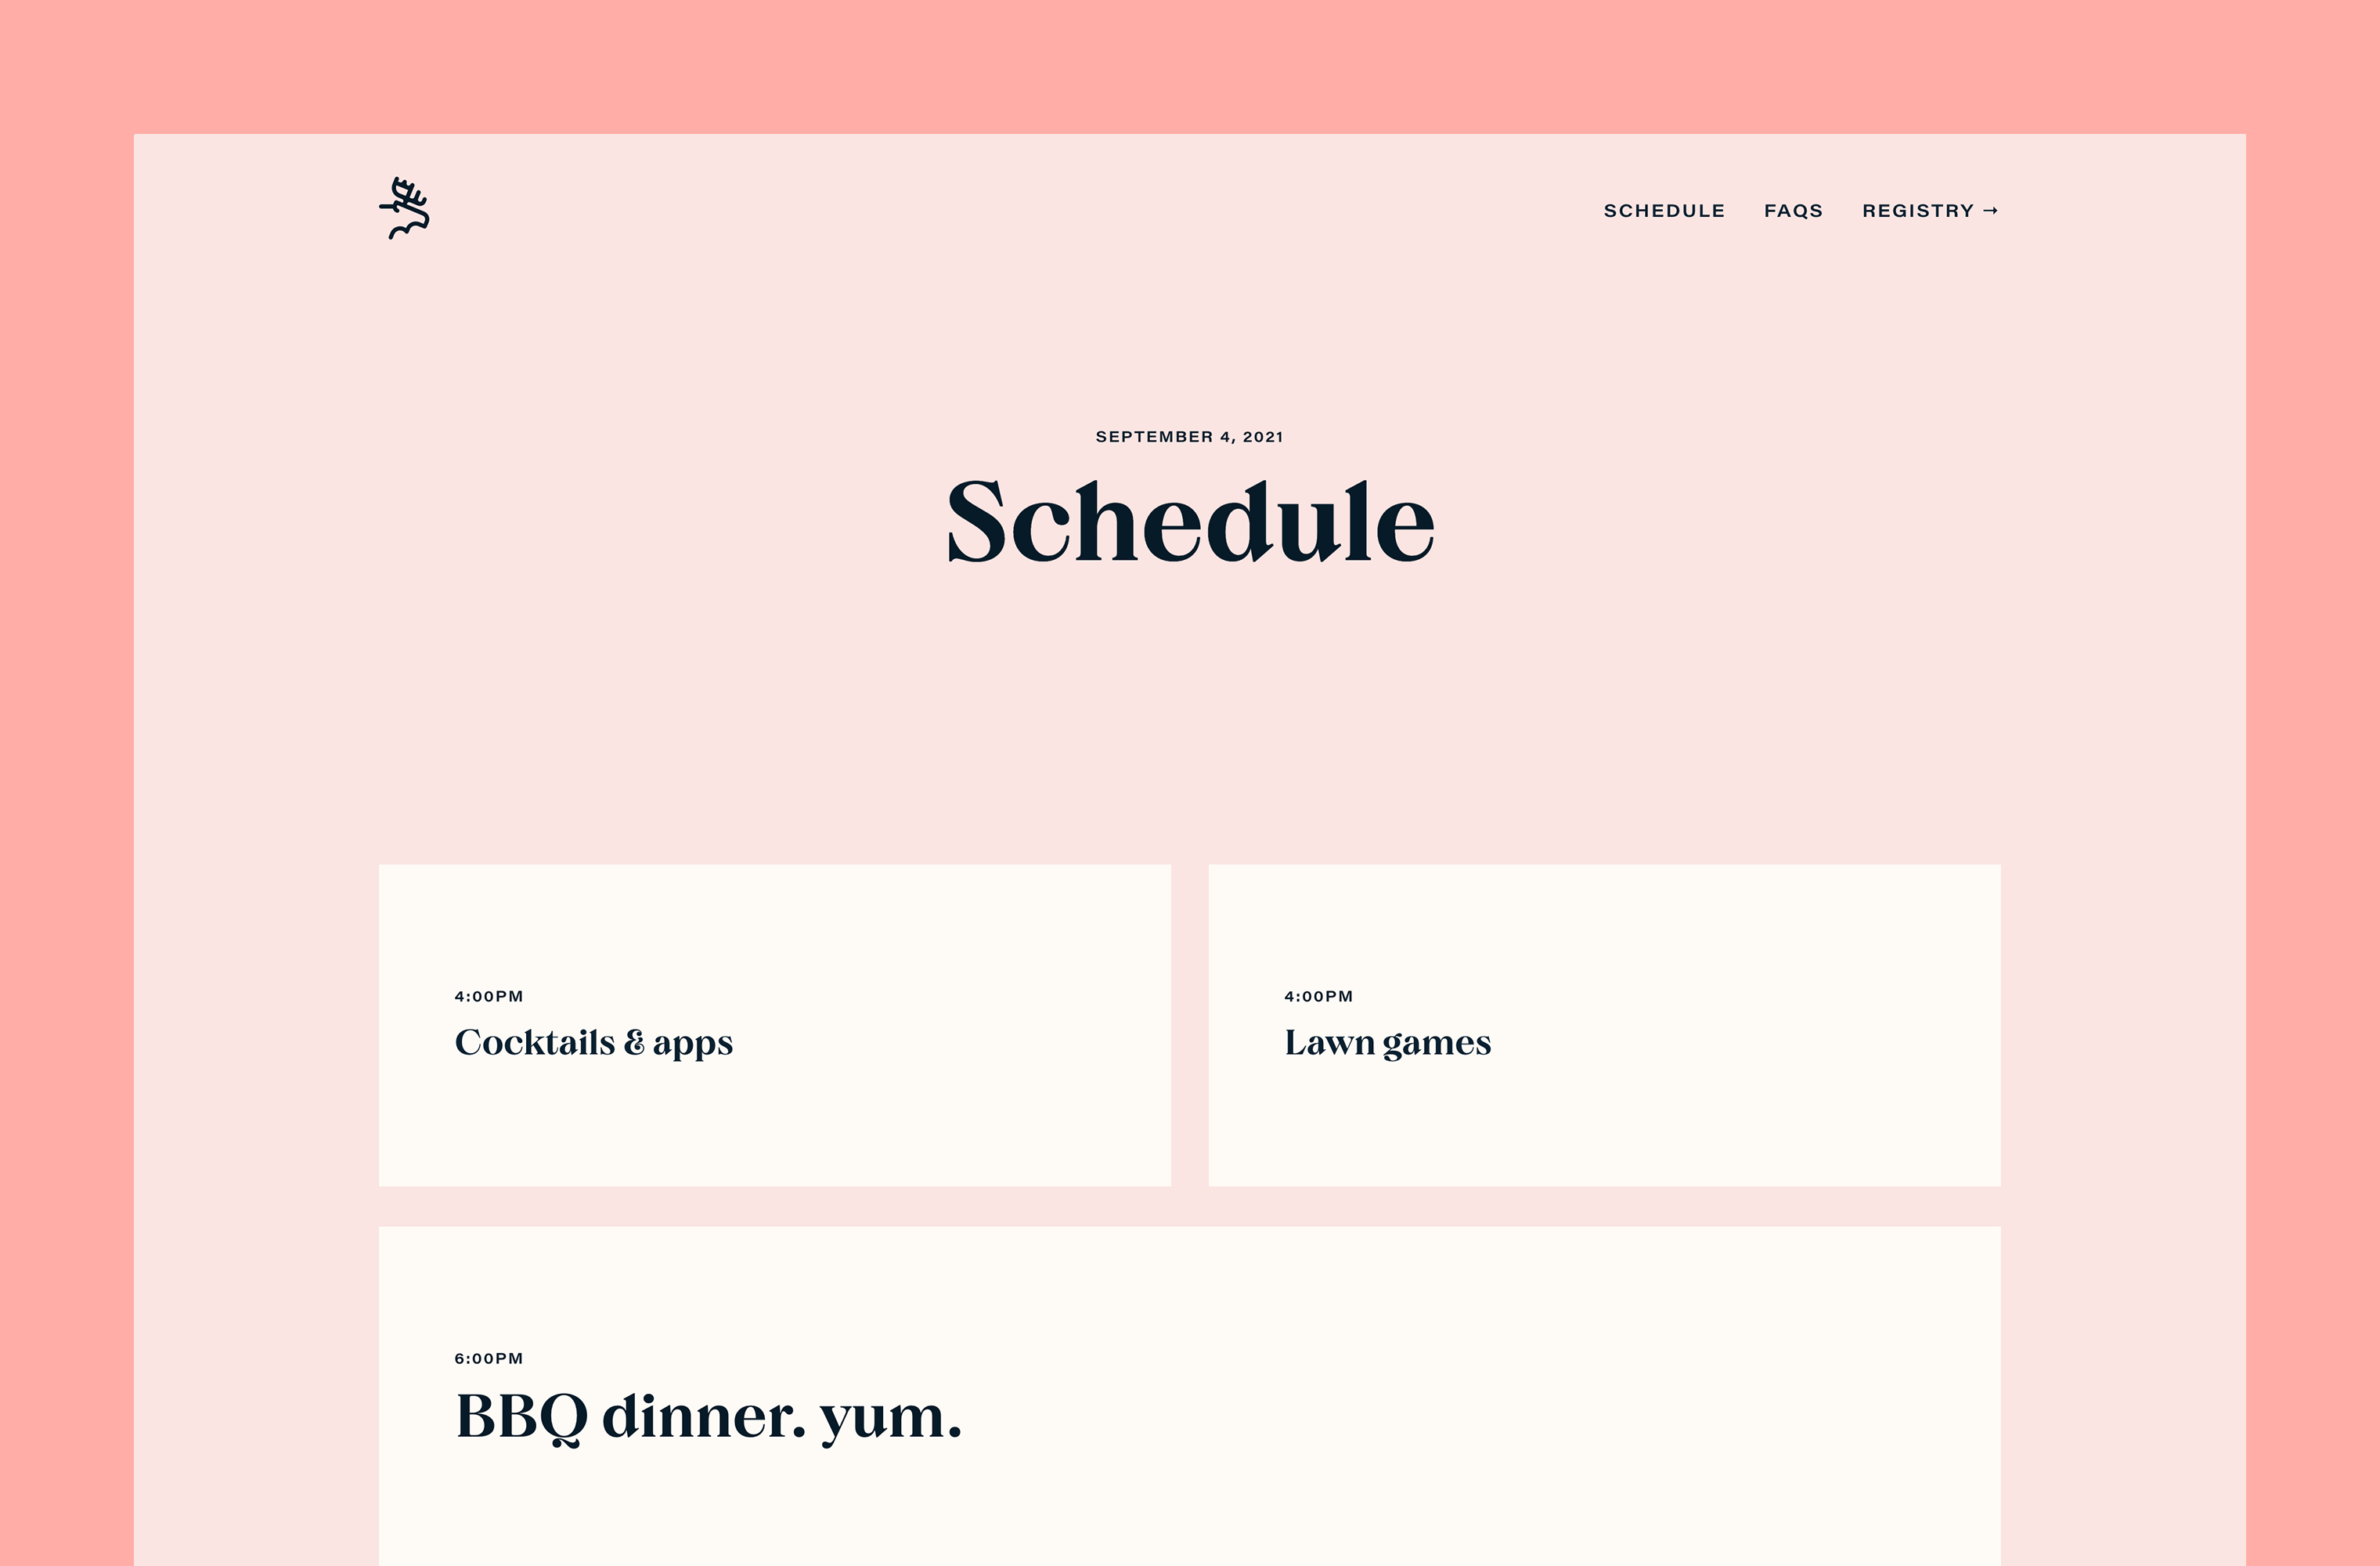 Desktop 'Schedule' page for the Ten Years website